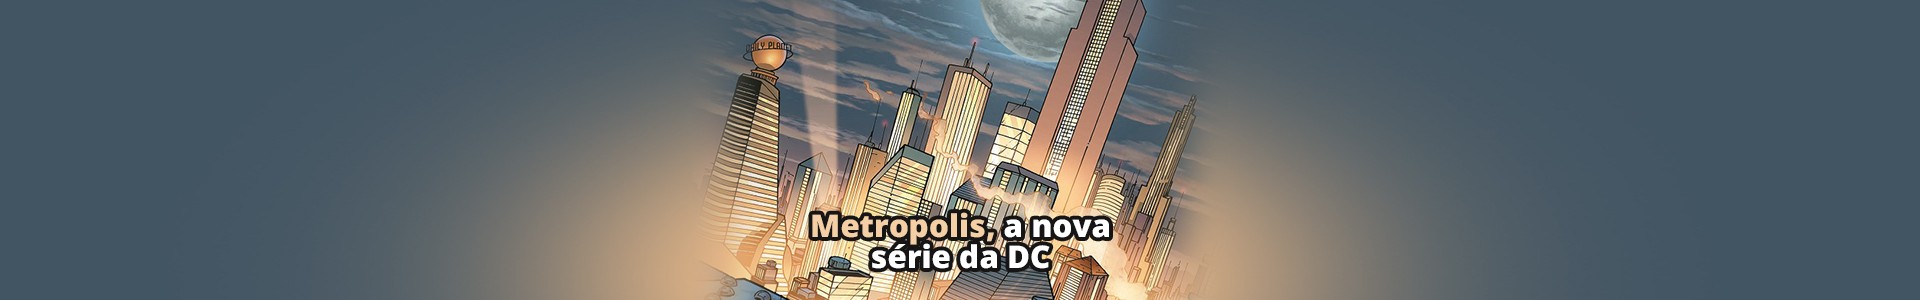 Metropolis: A nova série do Super-Homem dos criadores de Gotham